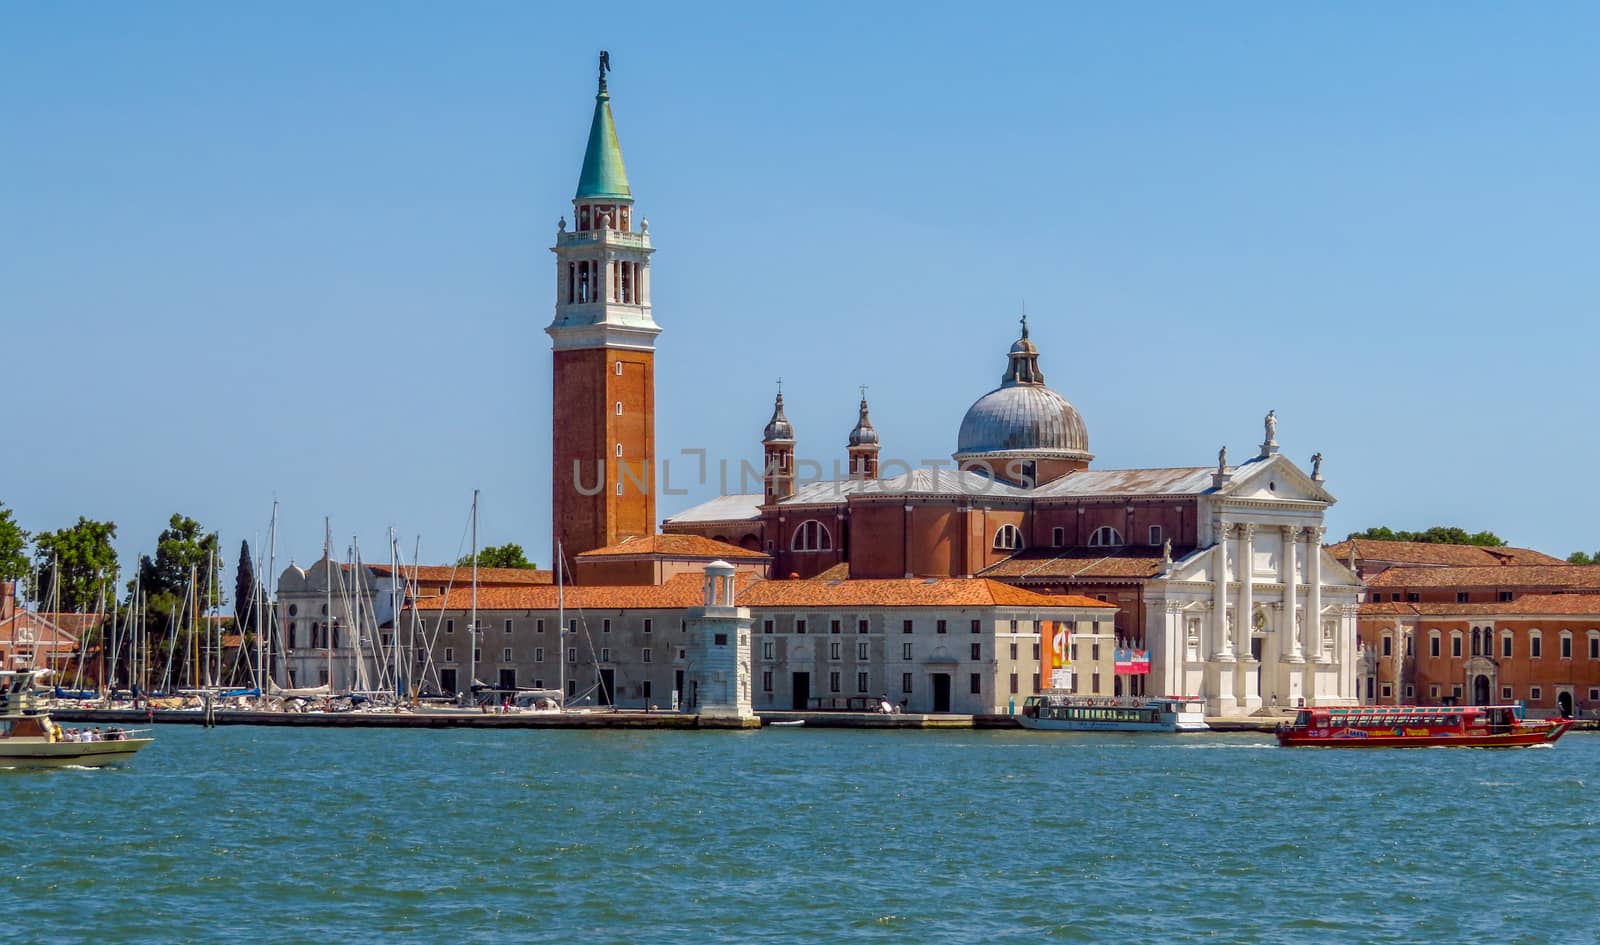 Venice - San Giorgio Maggiore Island by Venakr